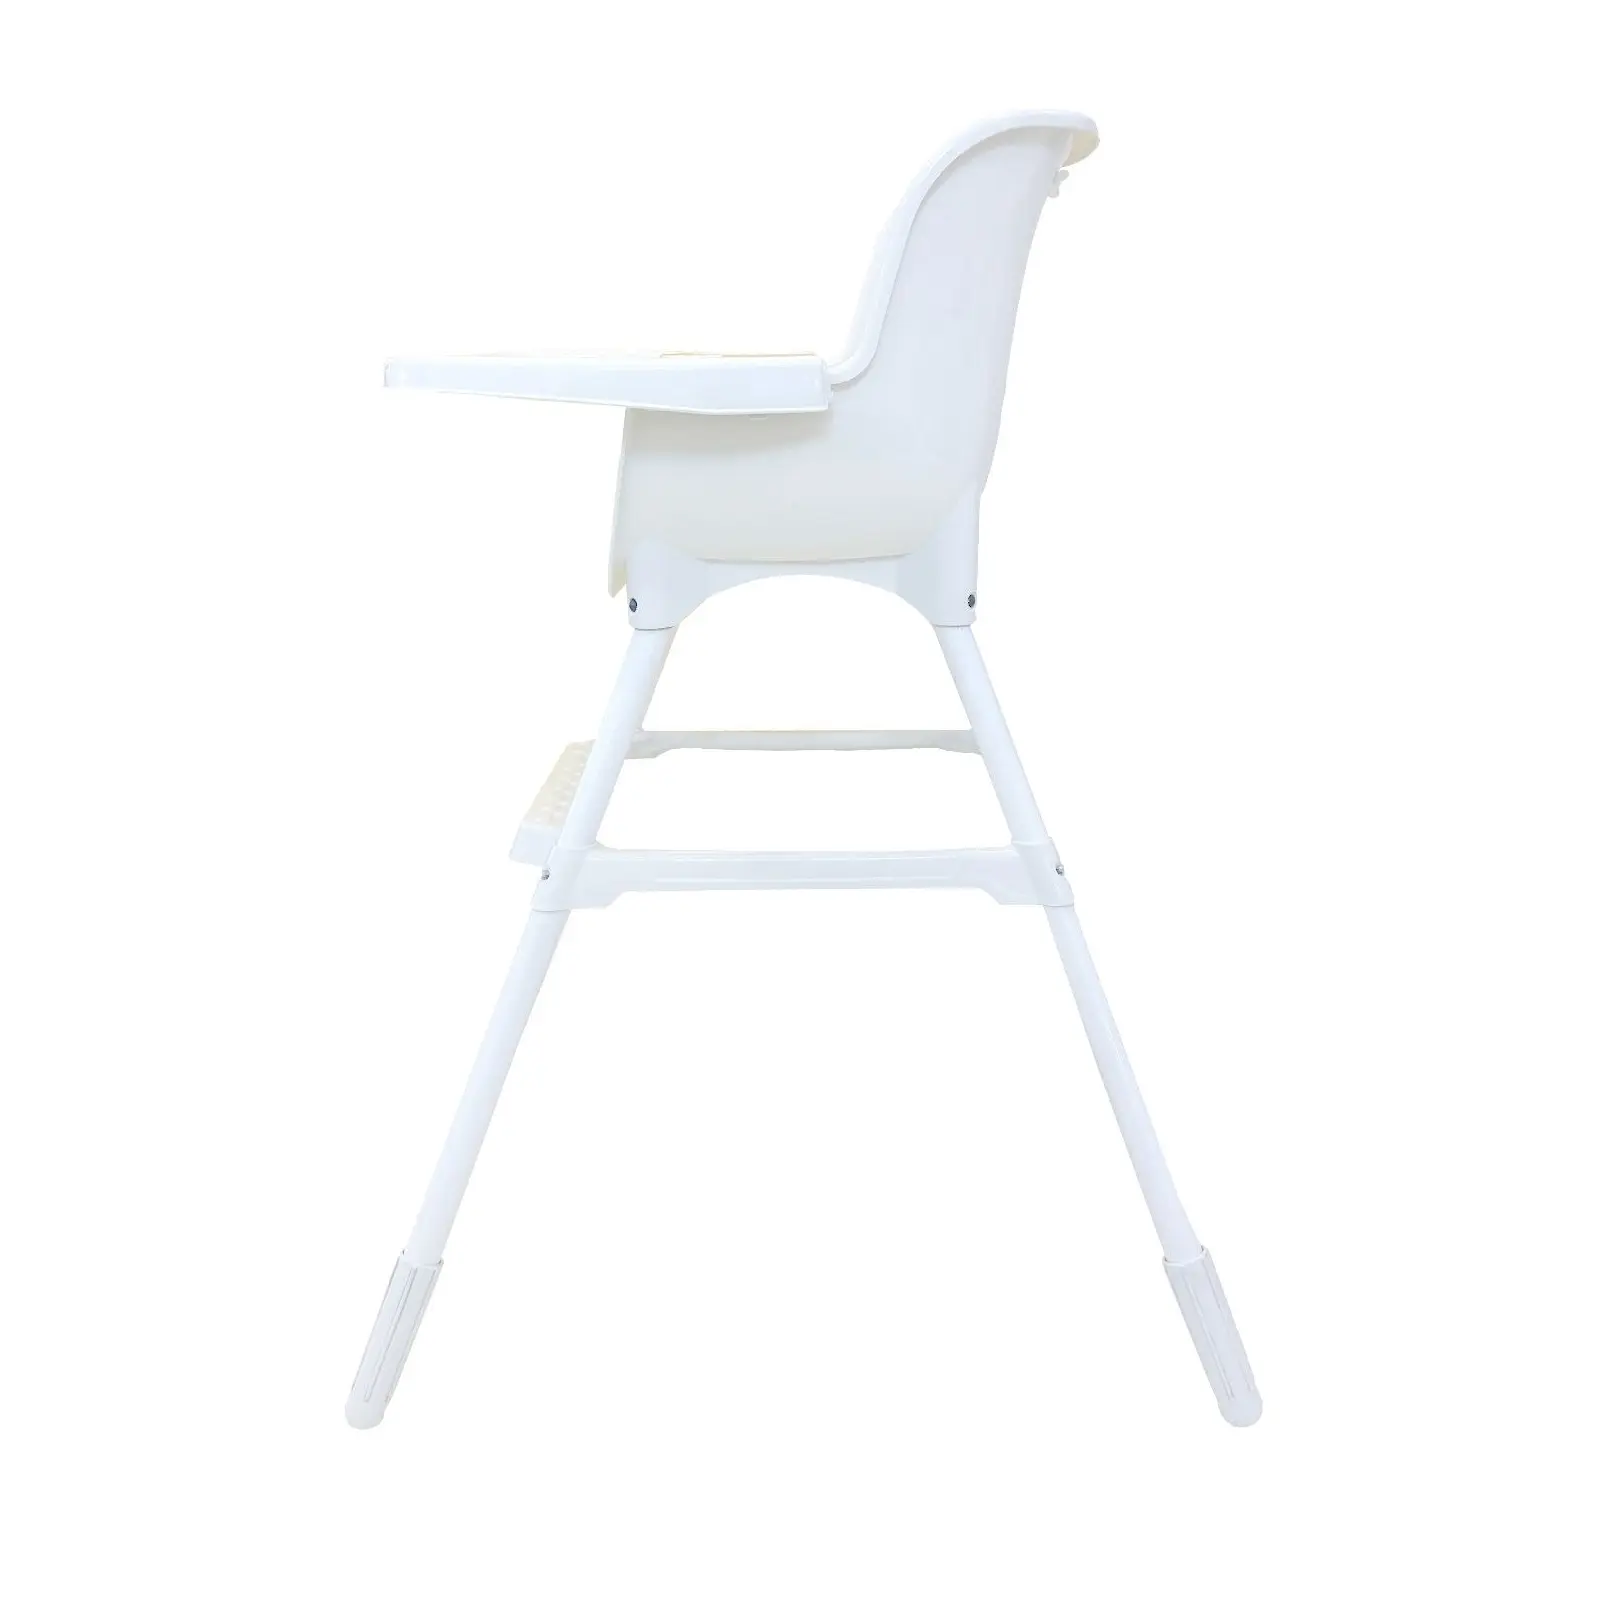 Tubo metálico de alta qualidade da cadeira de plástico da cadeira do metal da cor personalizada o material eco original muito bom preço